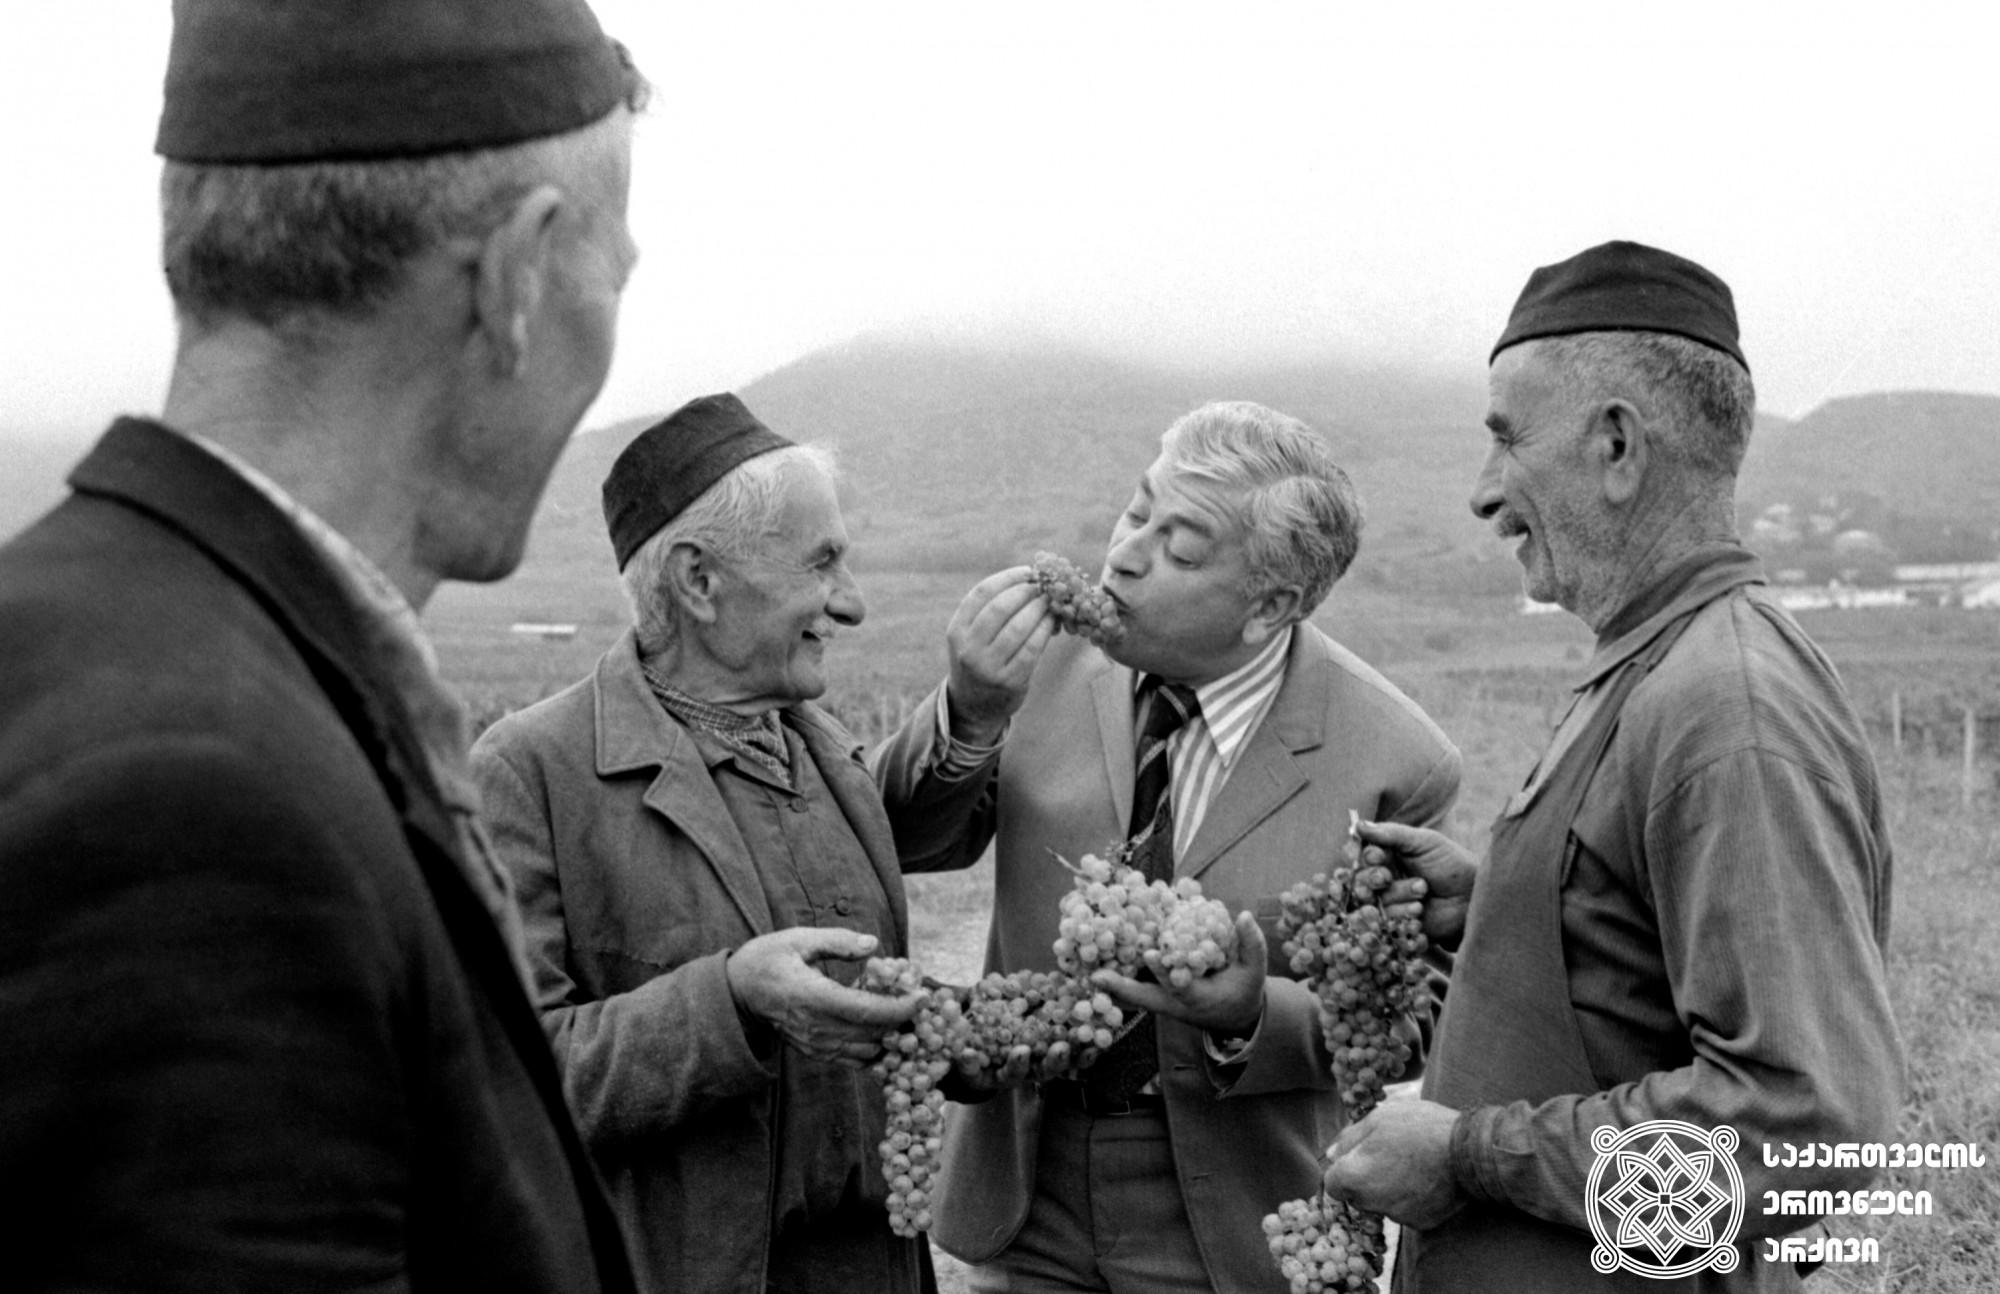 რამაზ ჩხიკვაძე სტუმრად მანავში. <br>
ალექსანდრე სააკოვის ფოტო. <br>
1973 წელი. <br>

Ramaz Chkhikvadze in Manavi. <br>
Photo by Alexander Saakov. <br>
1973. <br>